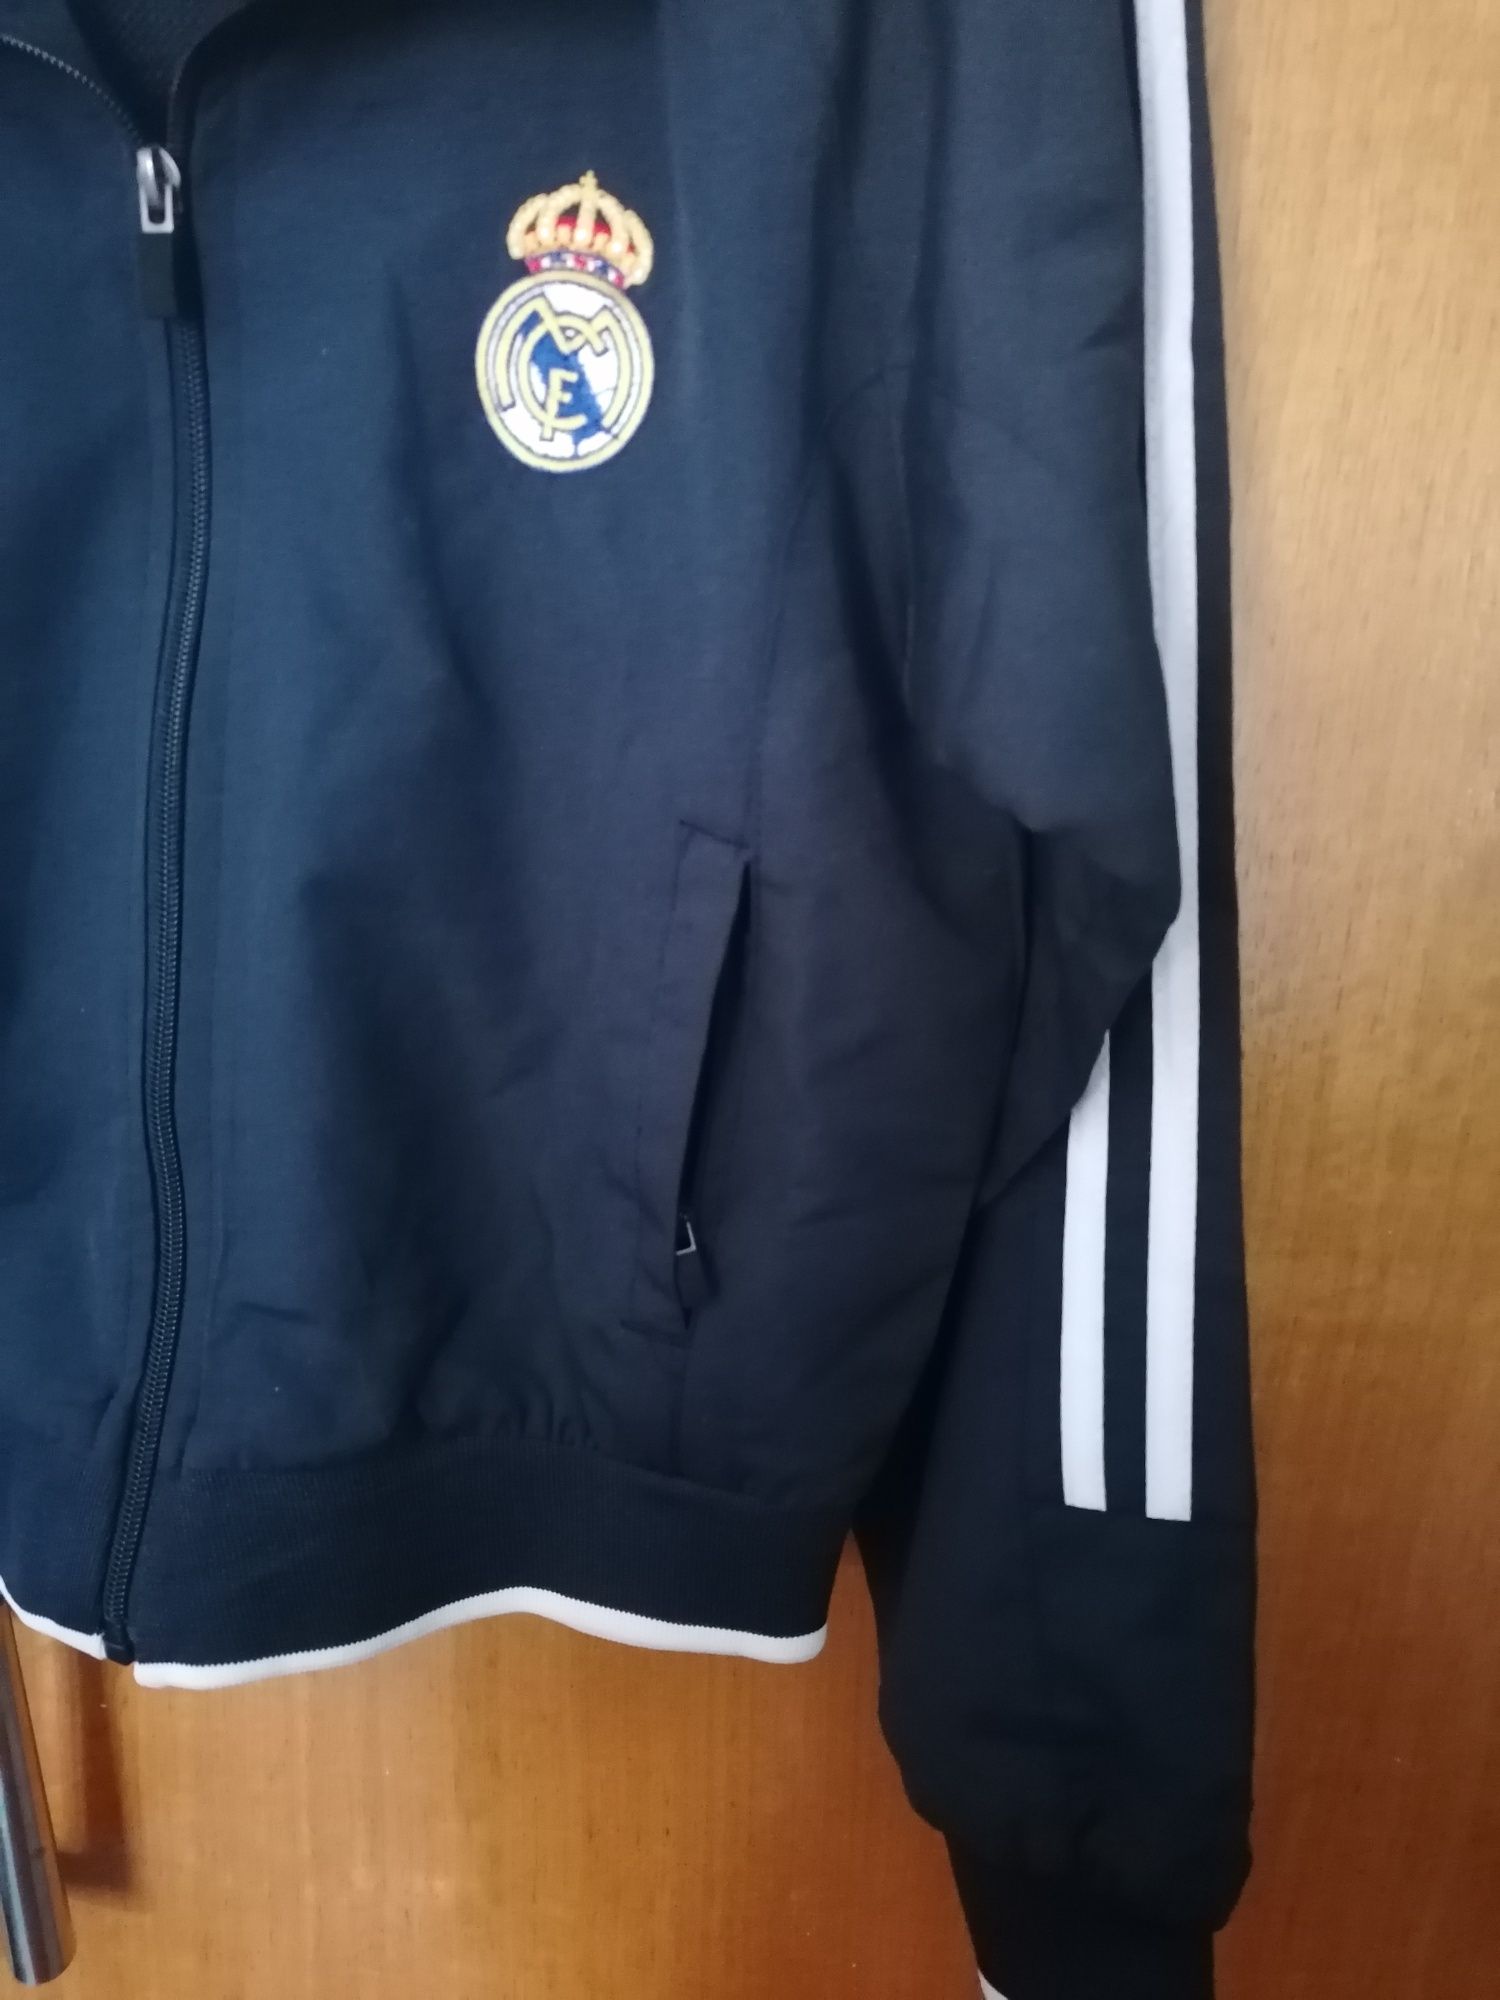 Blusão desportivo do Real Madrid, novo, tamanho 6